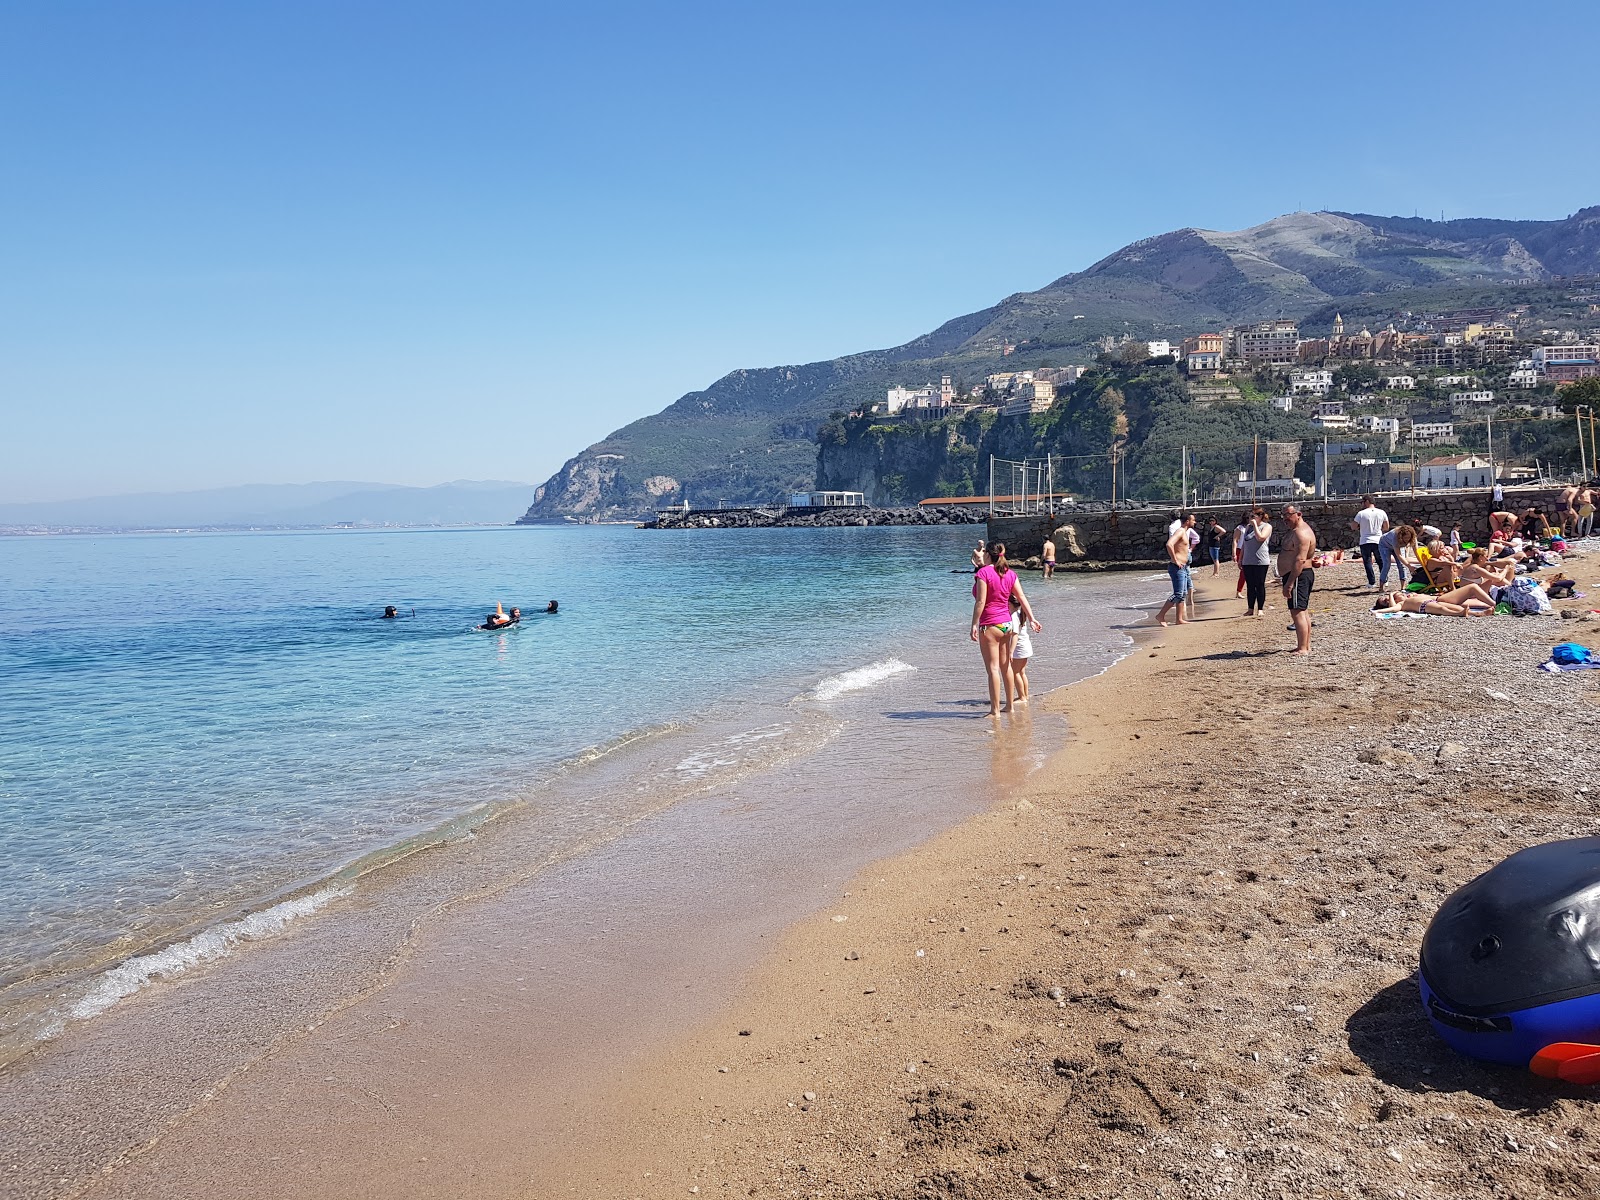 Foto von Spiaggia Seiano mit viele kleine buchten